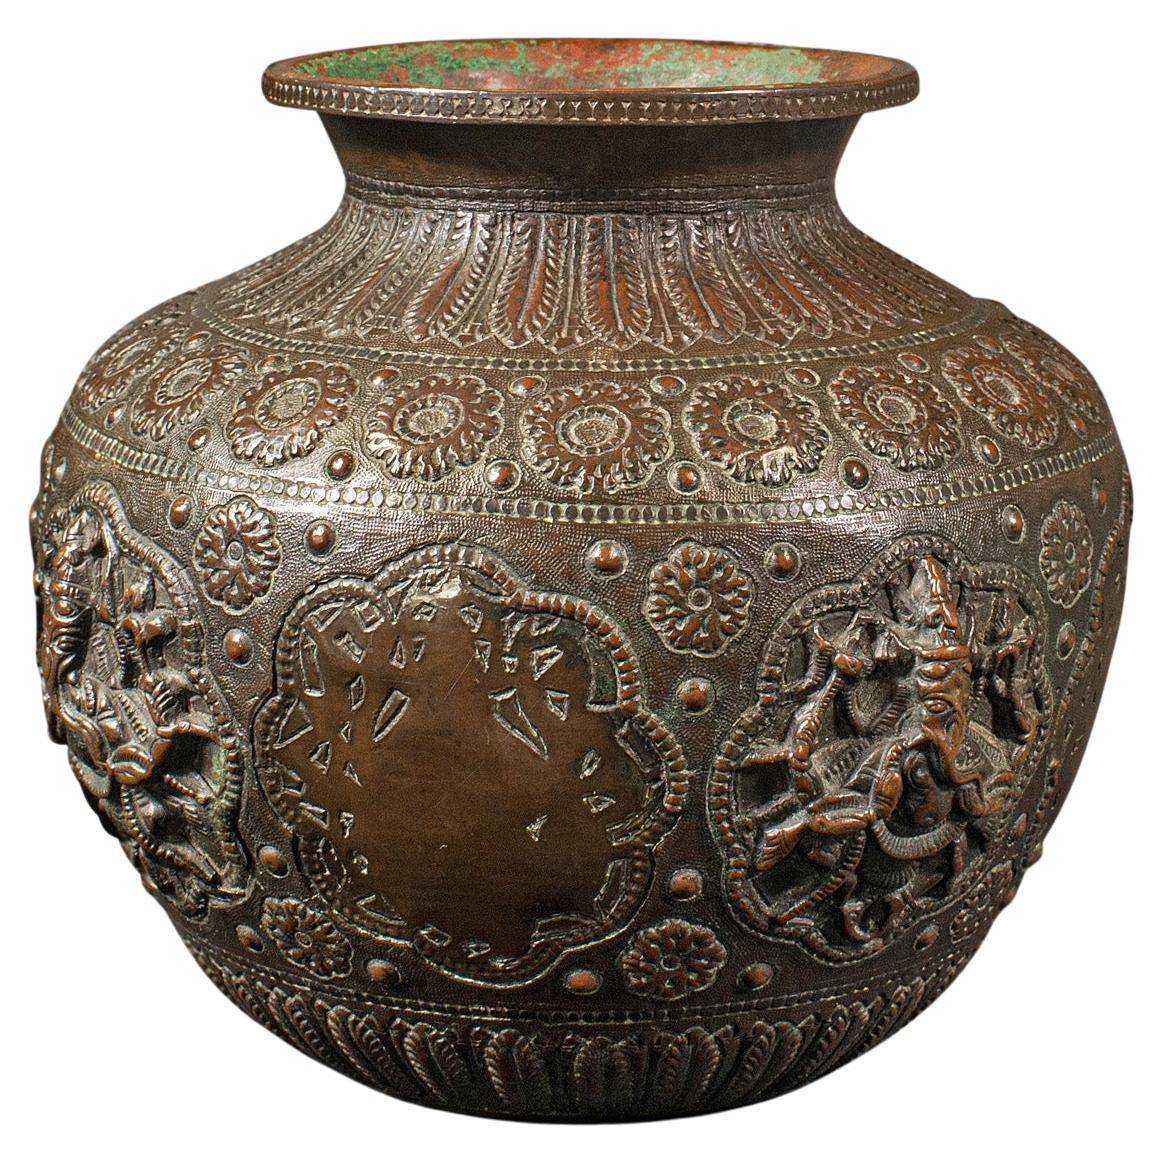 Pot de célébration ancien, indien, bronze, vase Diwali, Ganesh, Lakshmi, victorien